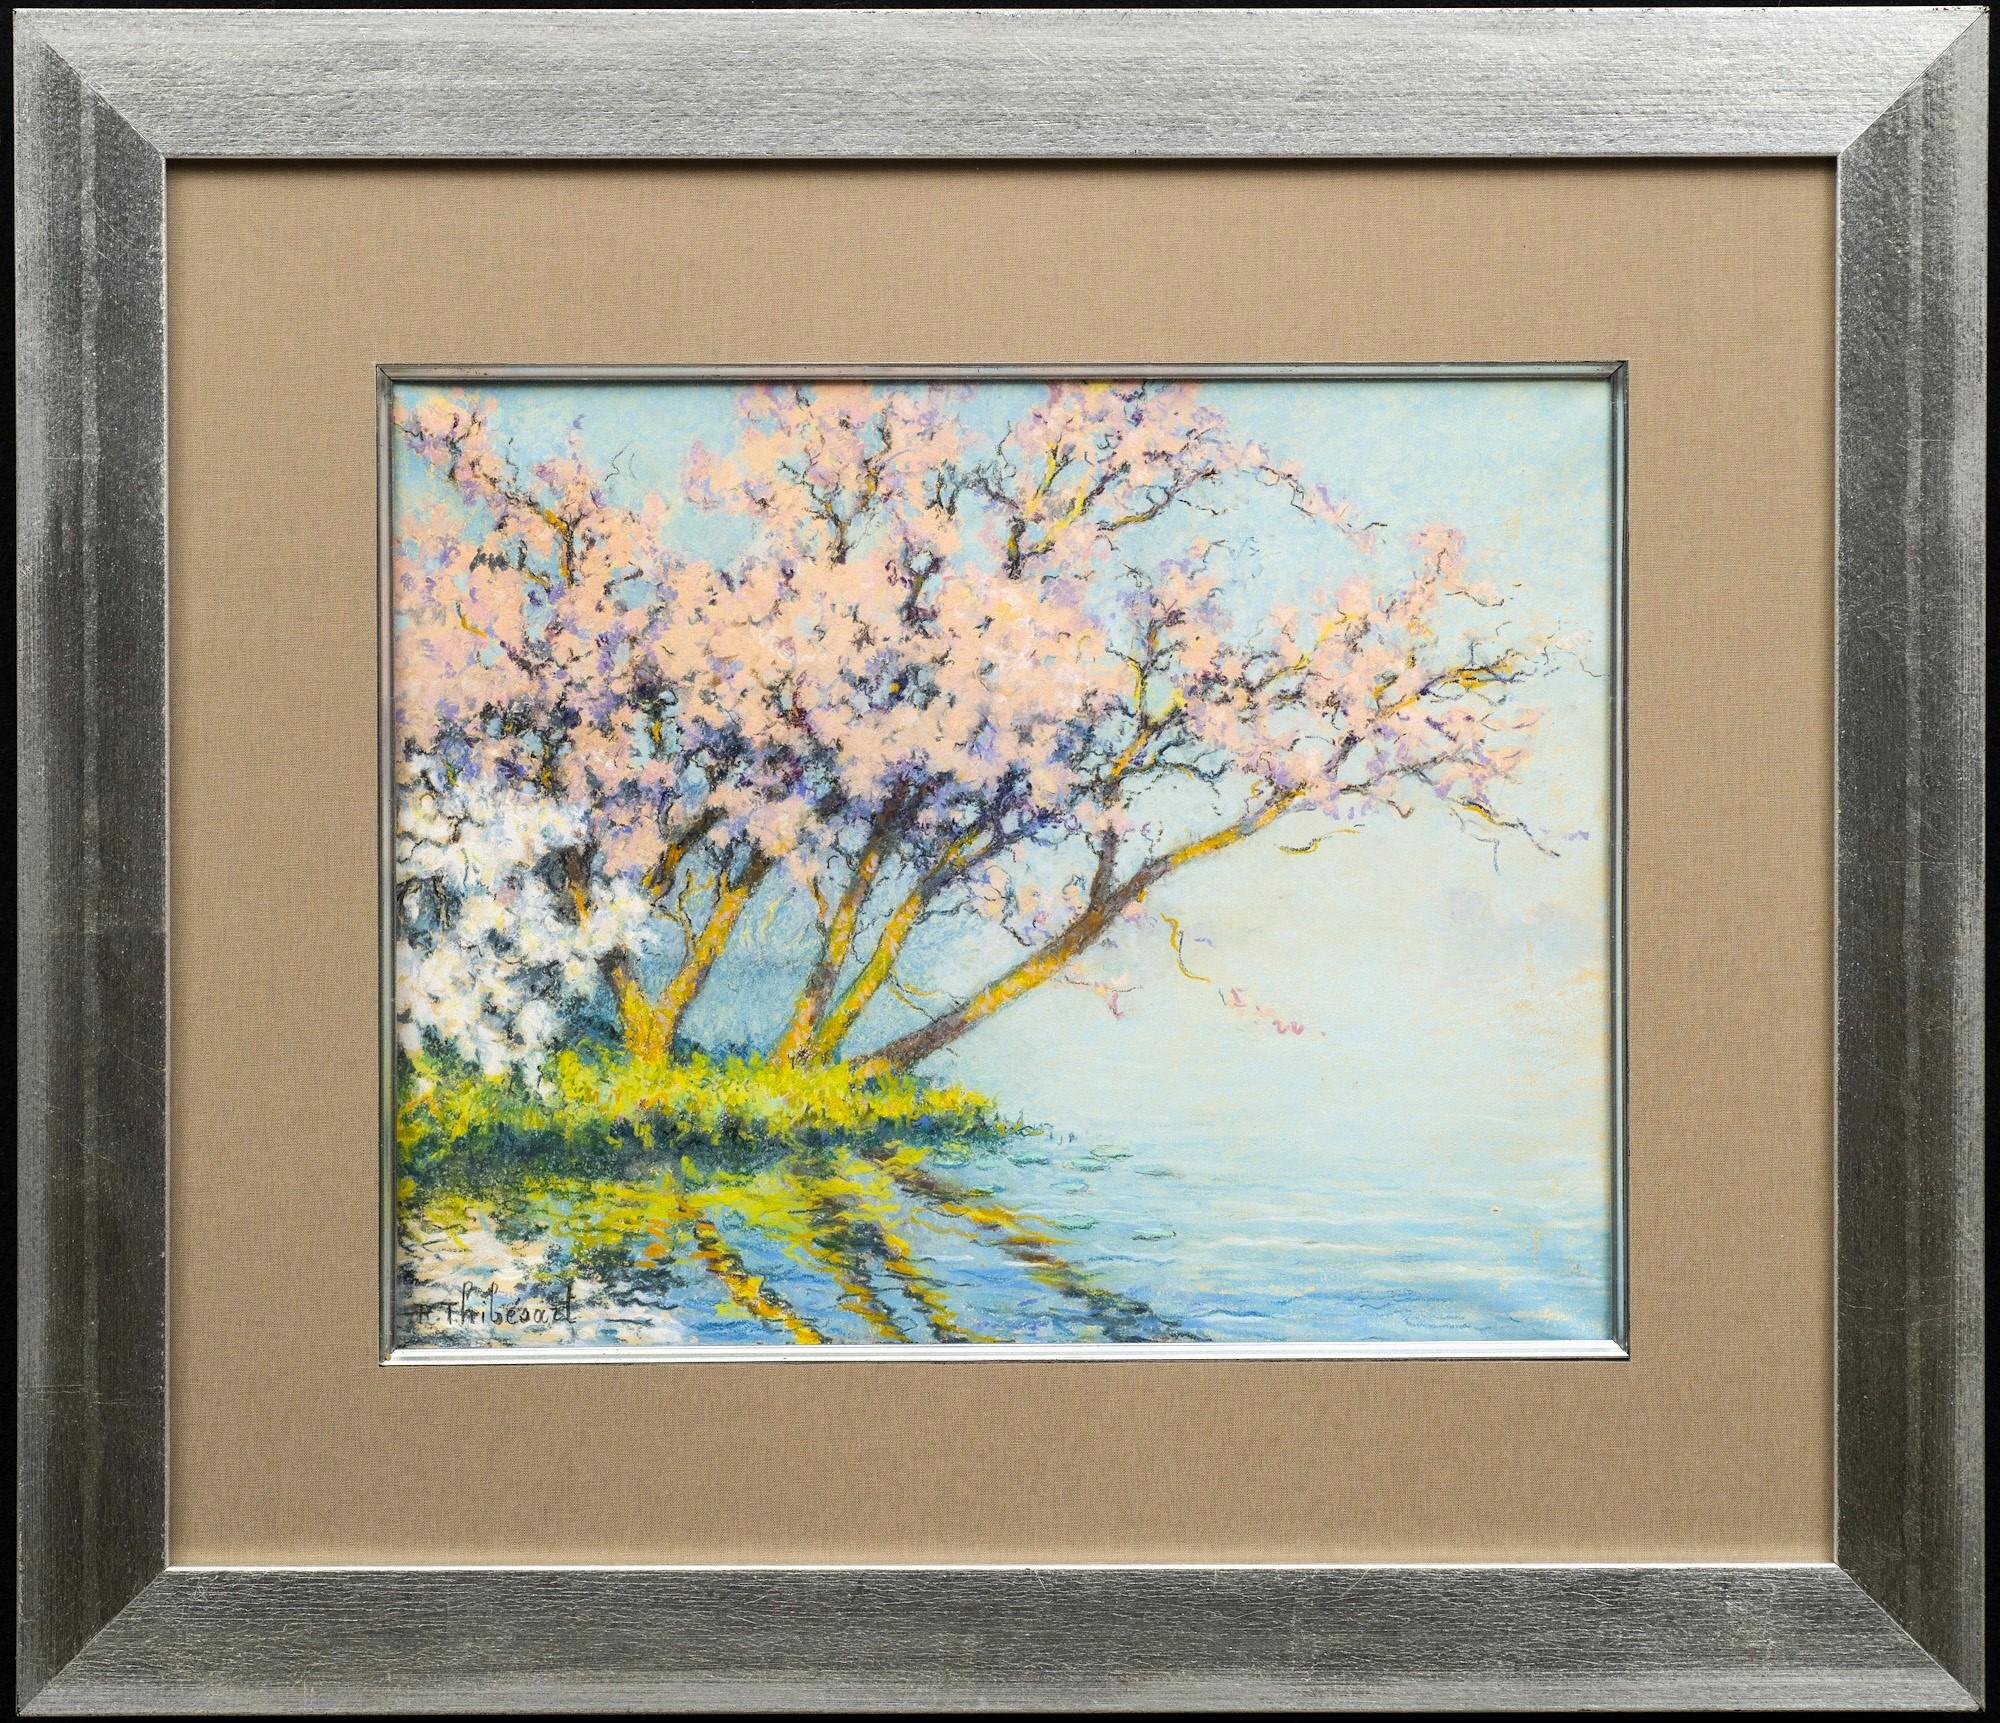 "Cerisiers en Fleurs sur la Seine" (Cherry Trees in Bloom on the Seine)
Raymond Thibesart (France, 1874-1968)
Pastel sur papier, vers 1920
Signé l.l.
Circa 15 1/2 x 12 1/2 pouces (non encadré)

Ici, avec des pastels lumineux, Raymond Thibesart fait